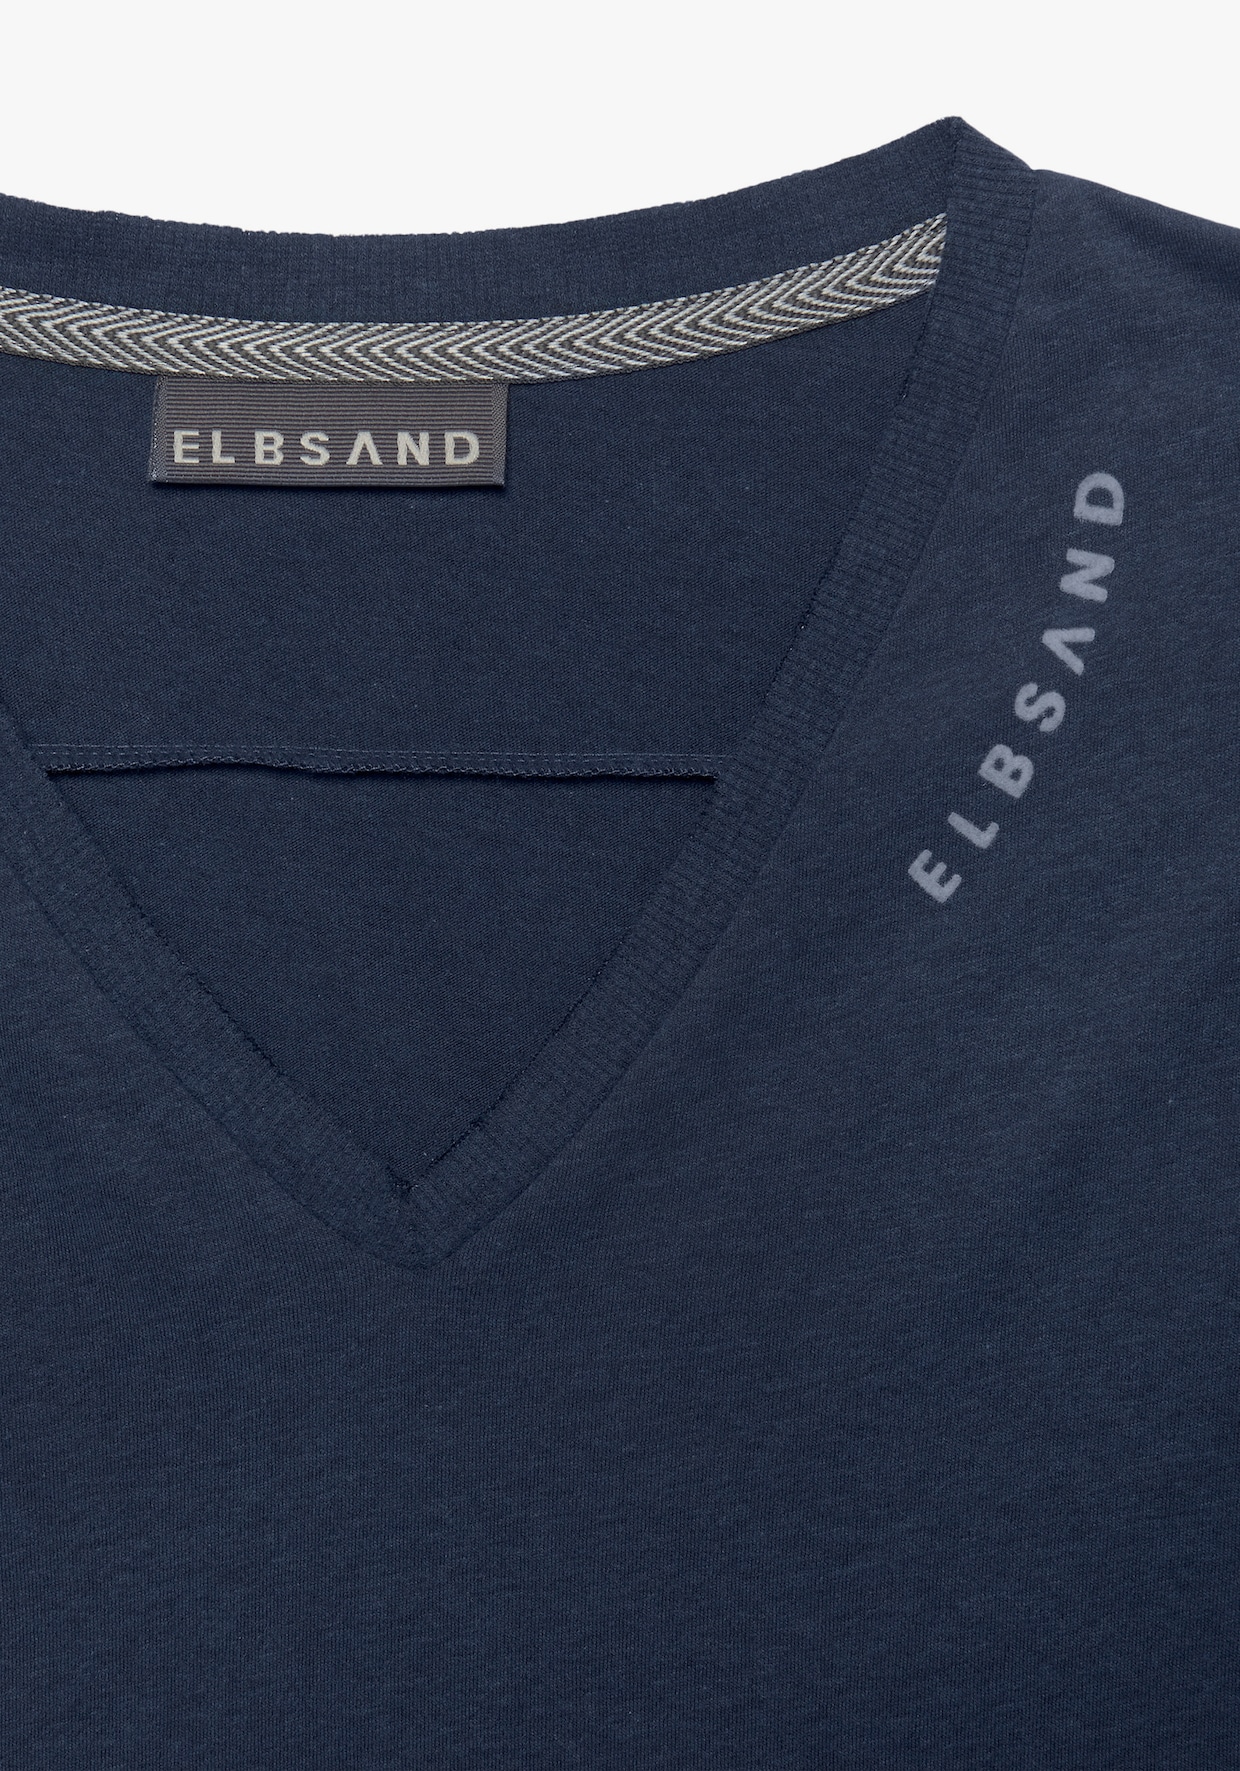 Elbsand T-Shirt - marine meliert